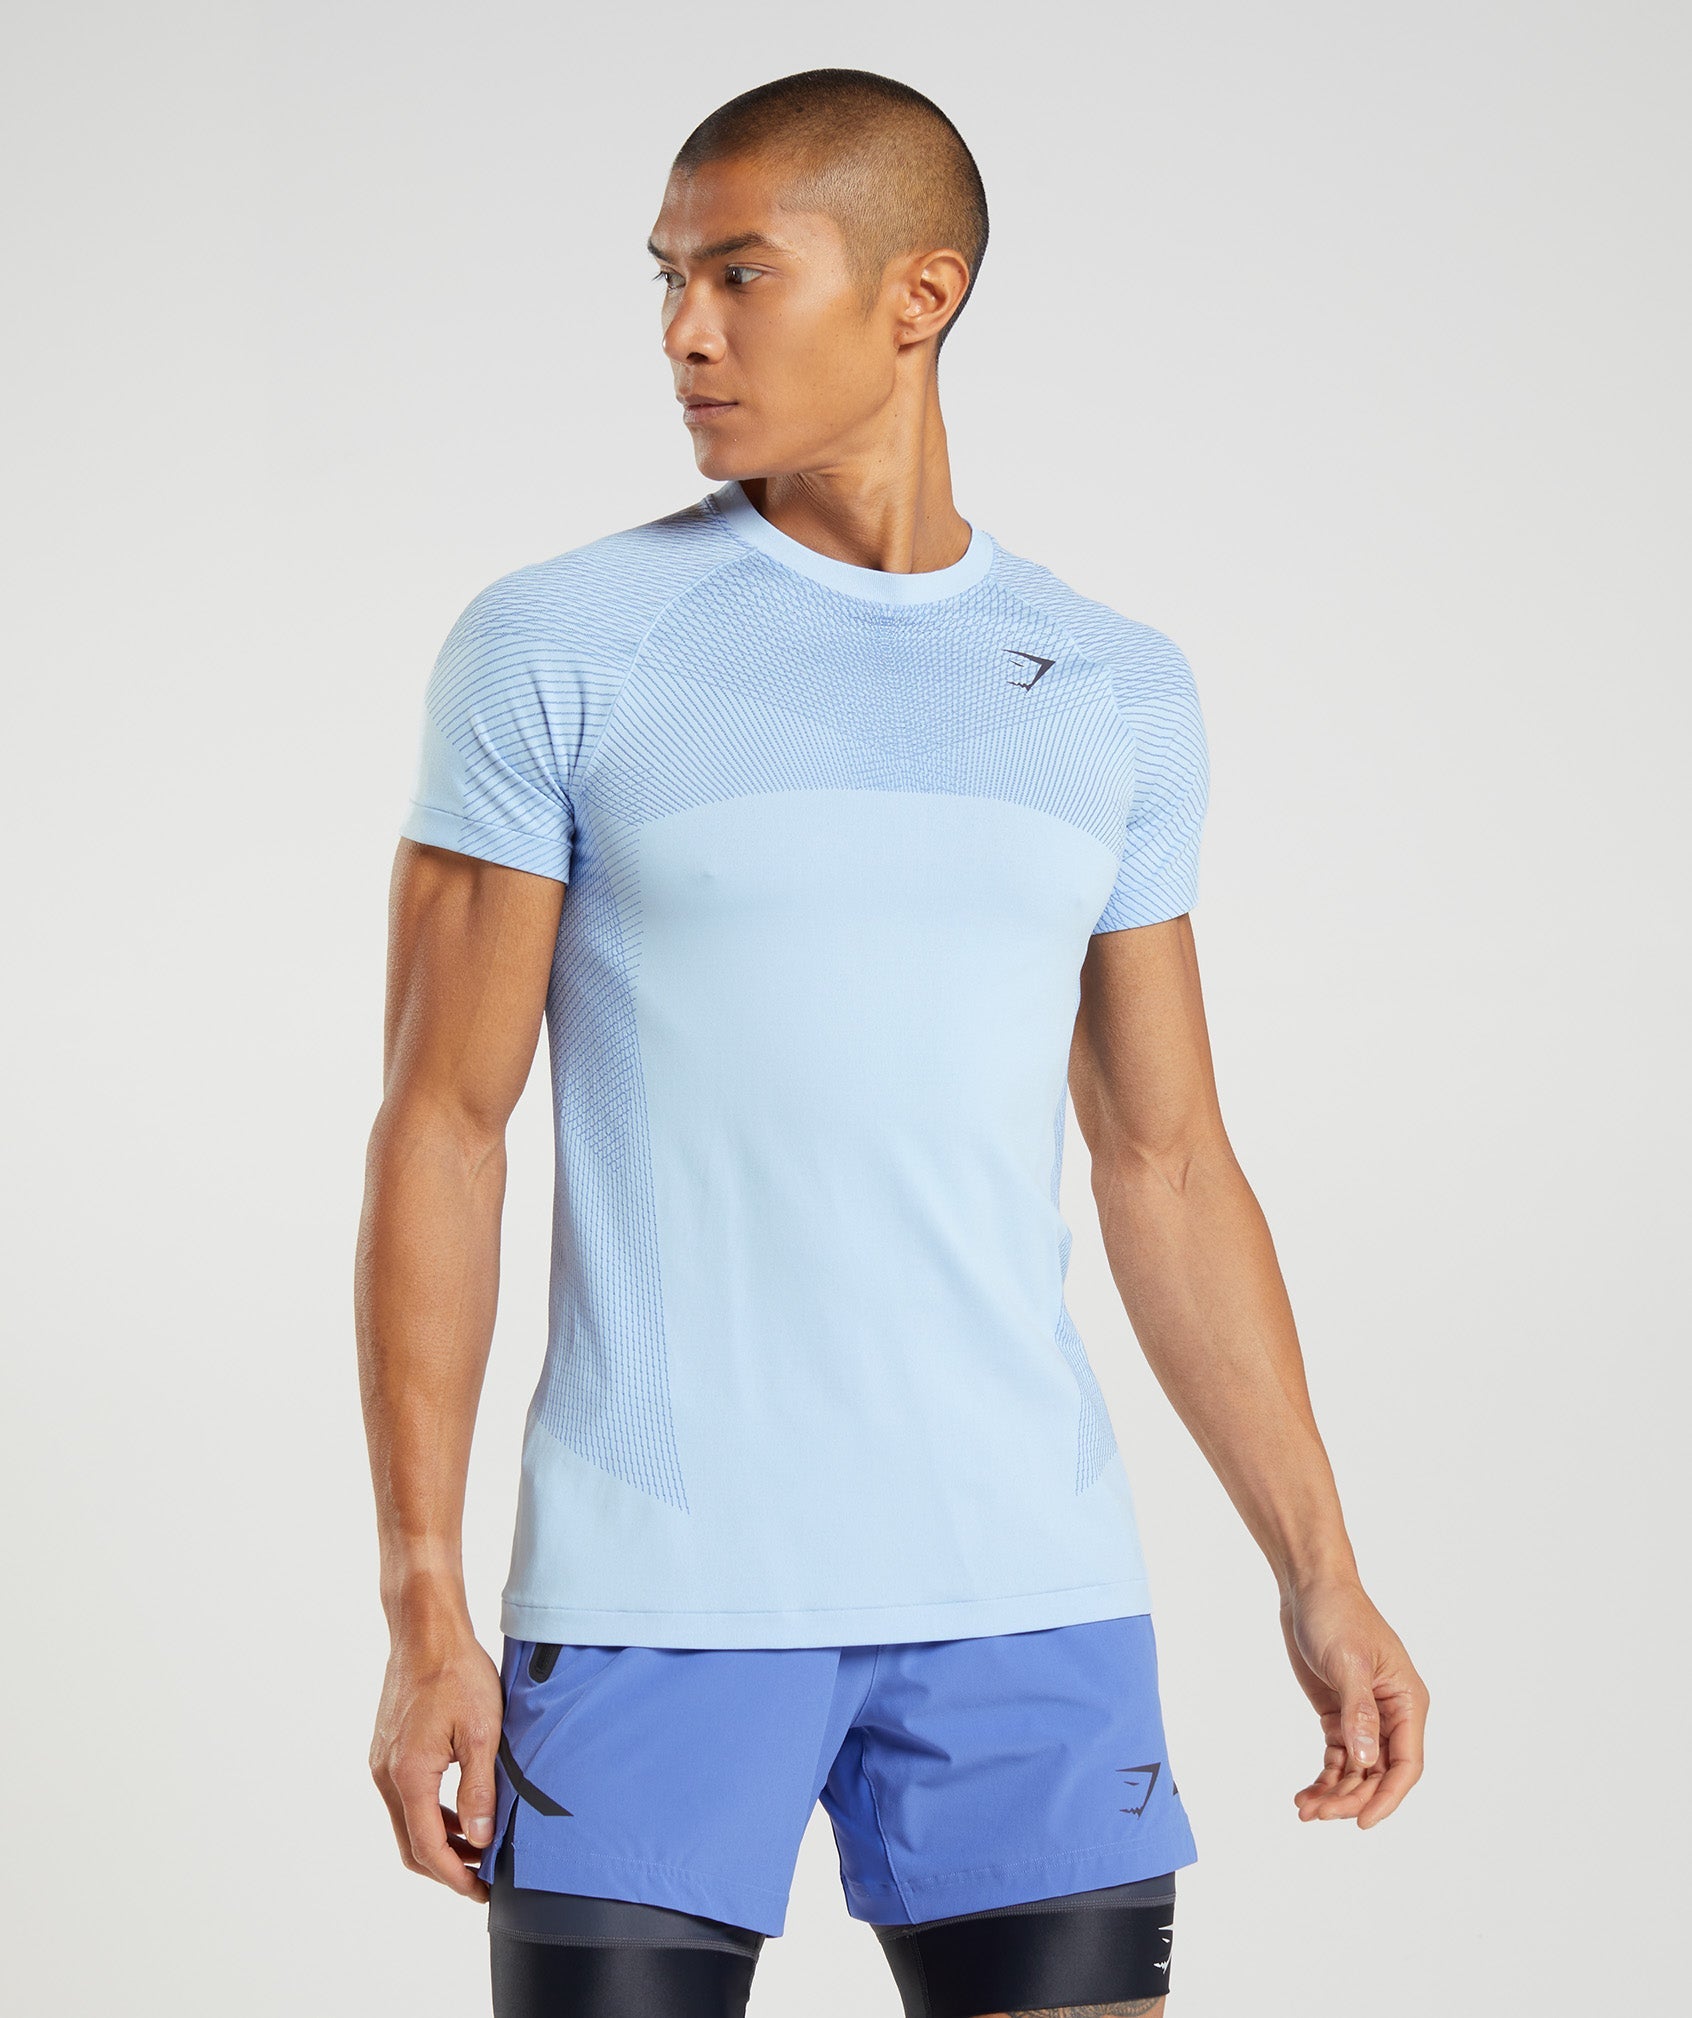 Apex Seamless T-Shirt in Linen Blue/Court Blue - view 1